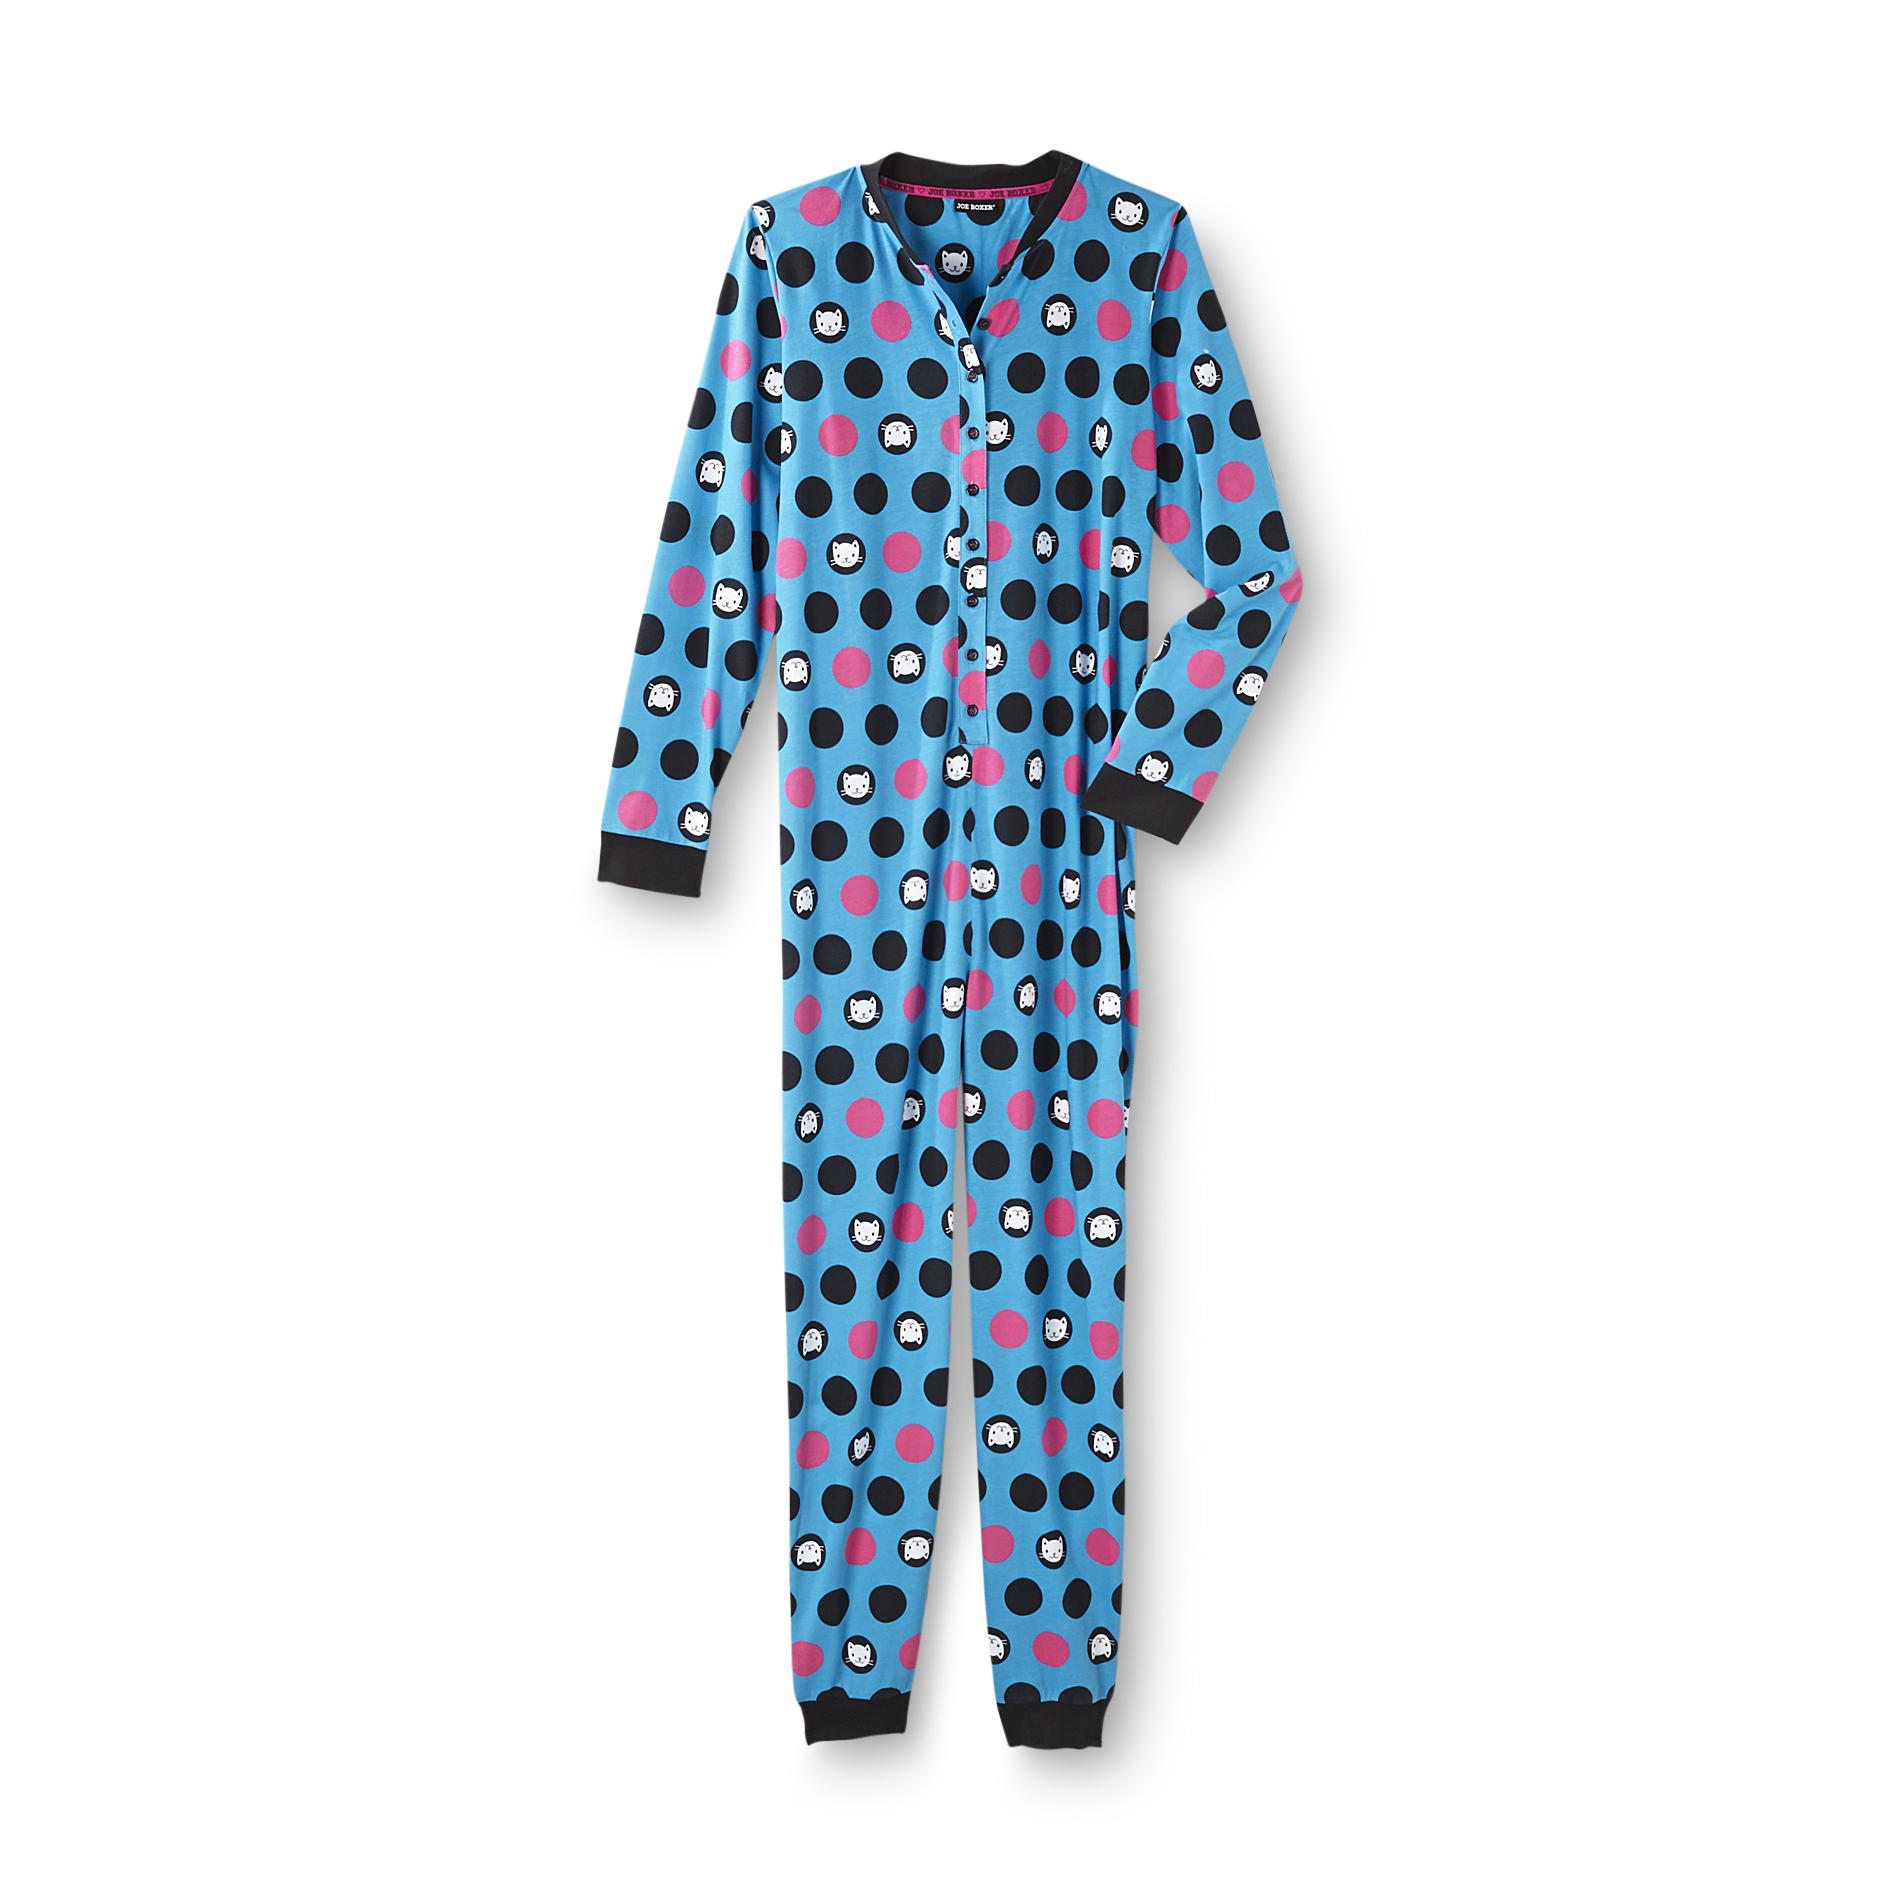 Joe Boxer Women's One-Piece Pajamas - Dots & Kitties